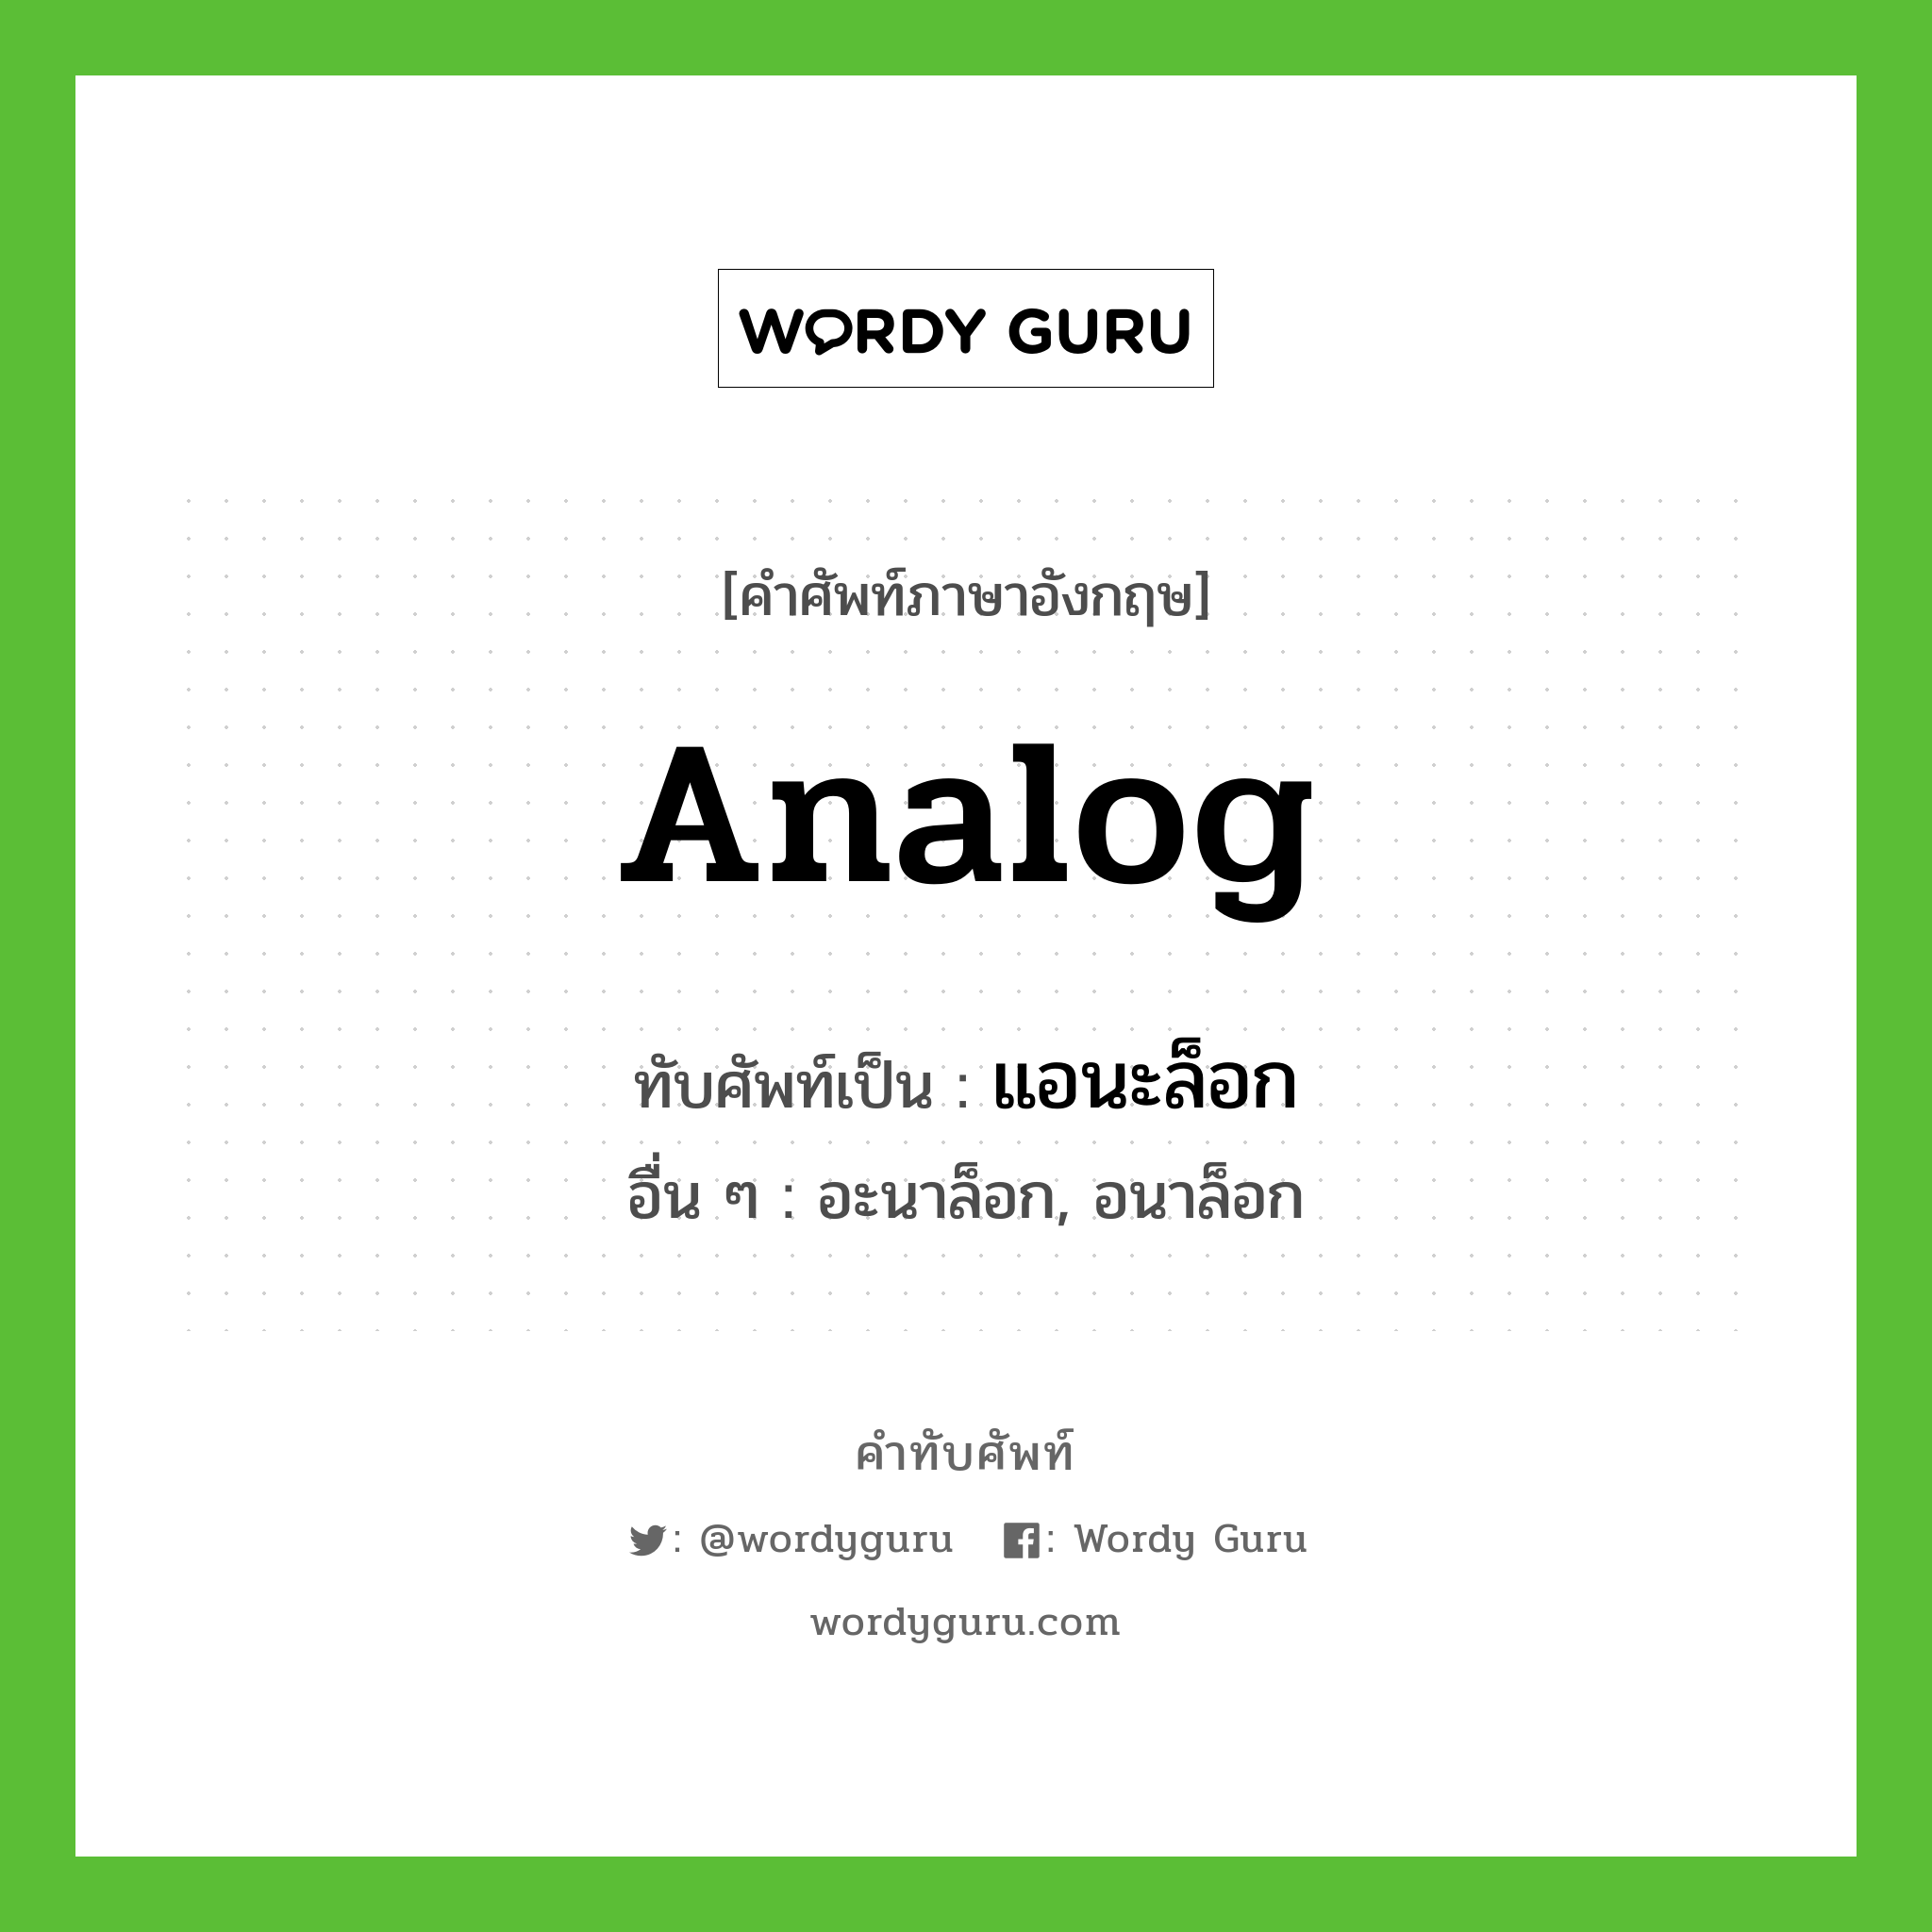 analog เขียนเป็นคำไทยว่าอะไร?, คำศัพท์ภาษาอังกฤษ analog ทับศัพท์เป็น แอนะล็อก อื่น ๆ อะนาล็อก, อนาล็อก